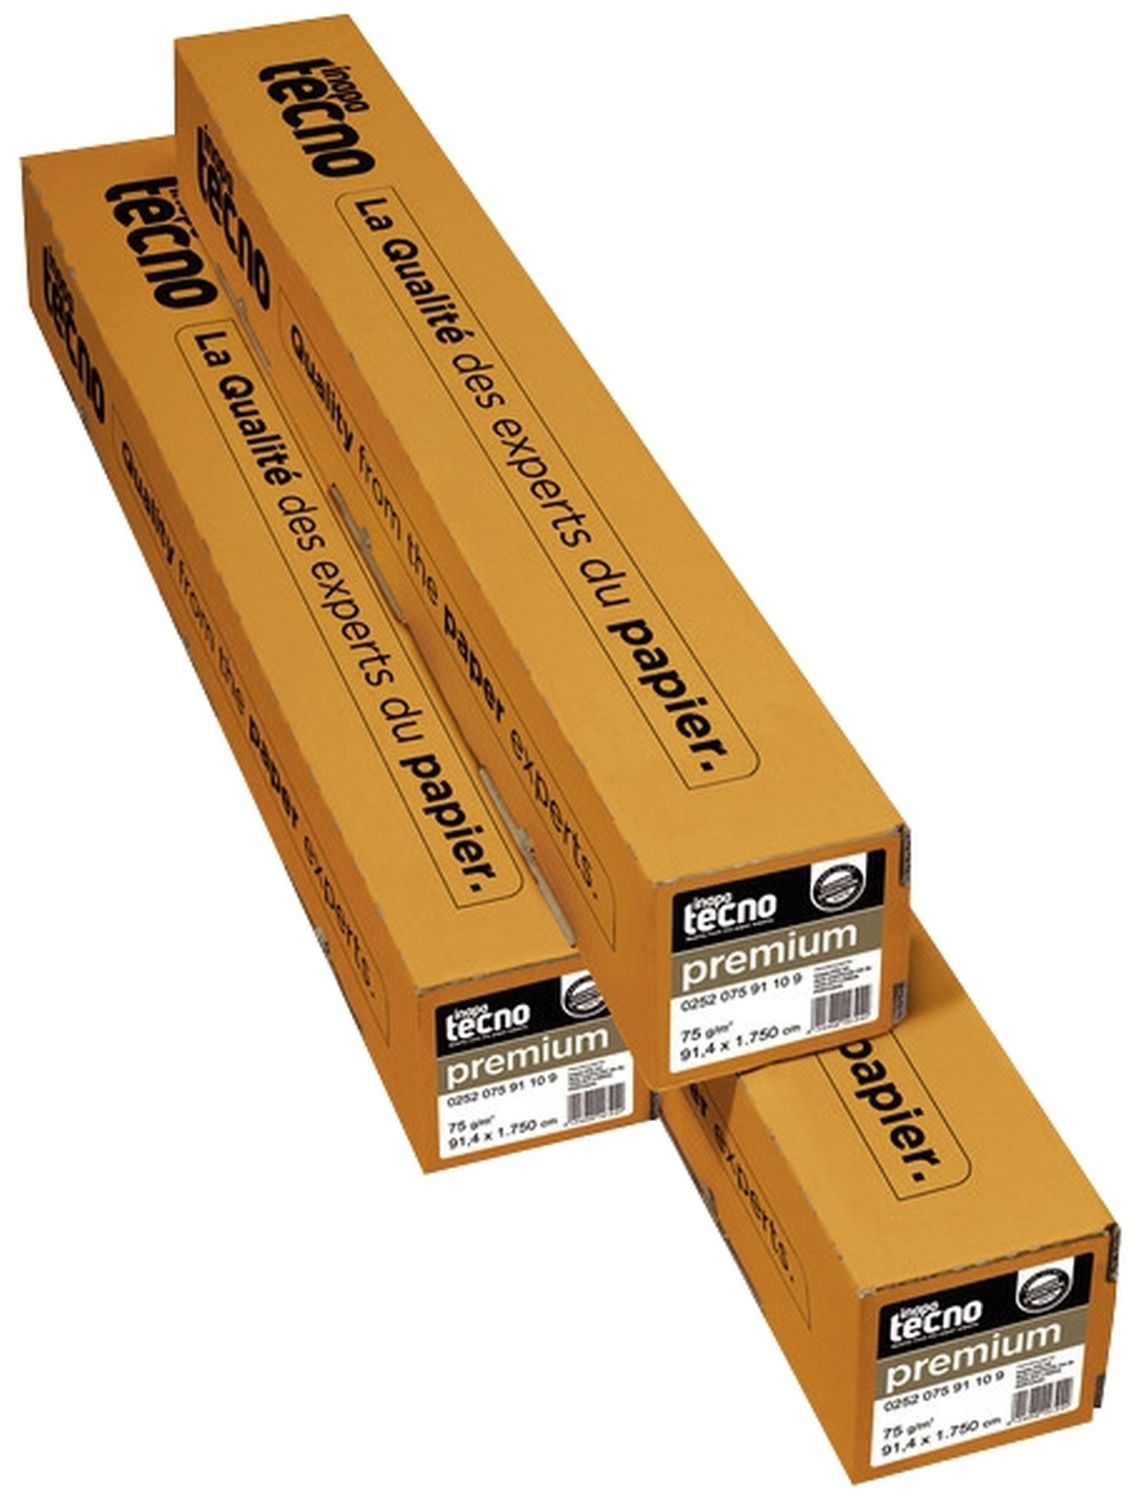 Plotterpapier tecno premium 41000000163 für Großformatdruck, 841 mm x 175 m (A0), 75 g/qm, Kern-Ø 7,50 cm, 1 Rolle